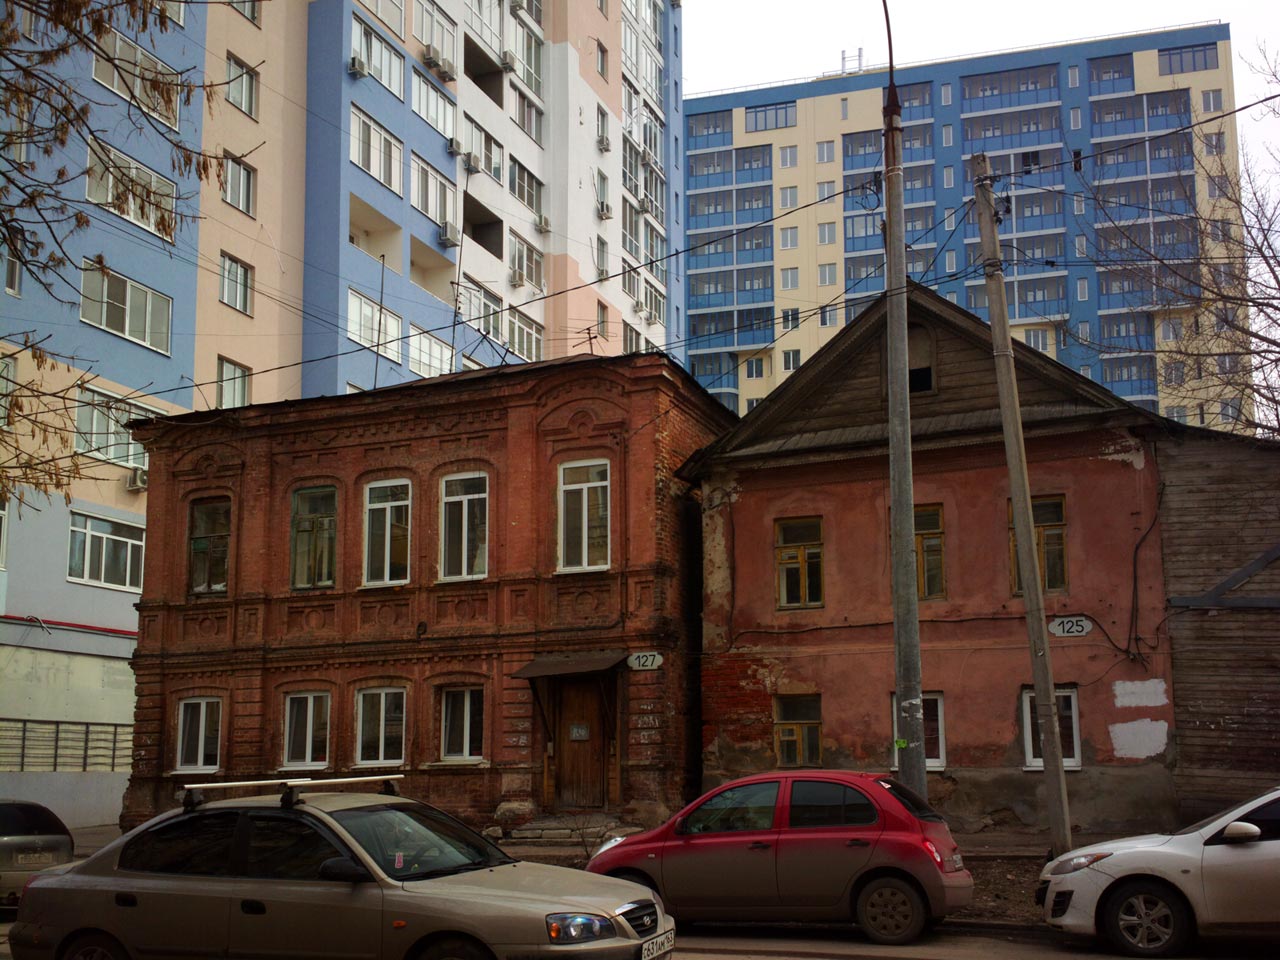 Самара, Улица Алексея Толстого, 127; Улица Алексея Толстого, 125